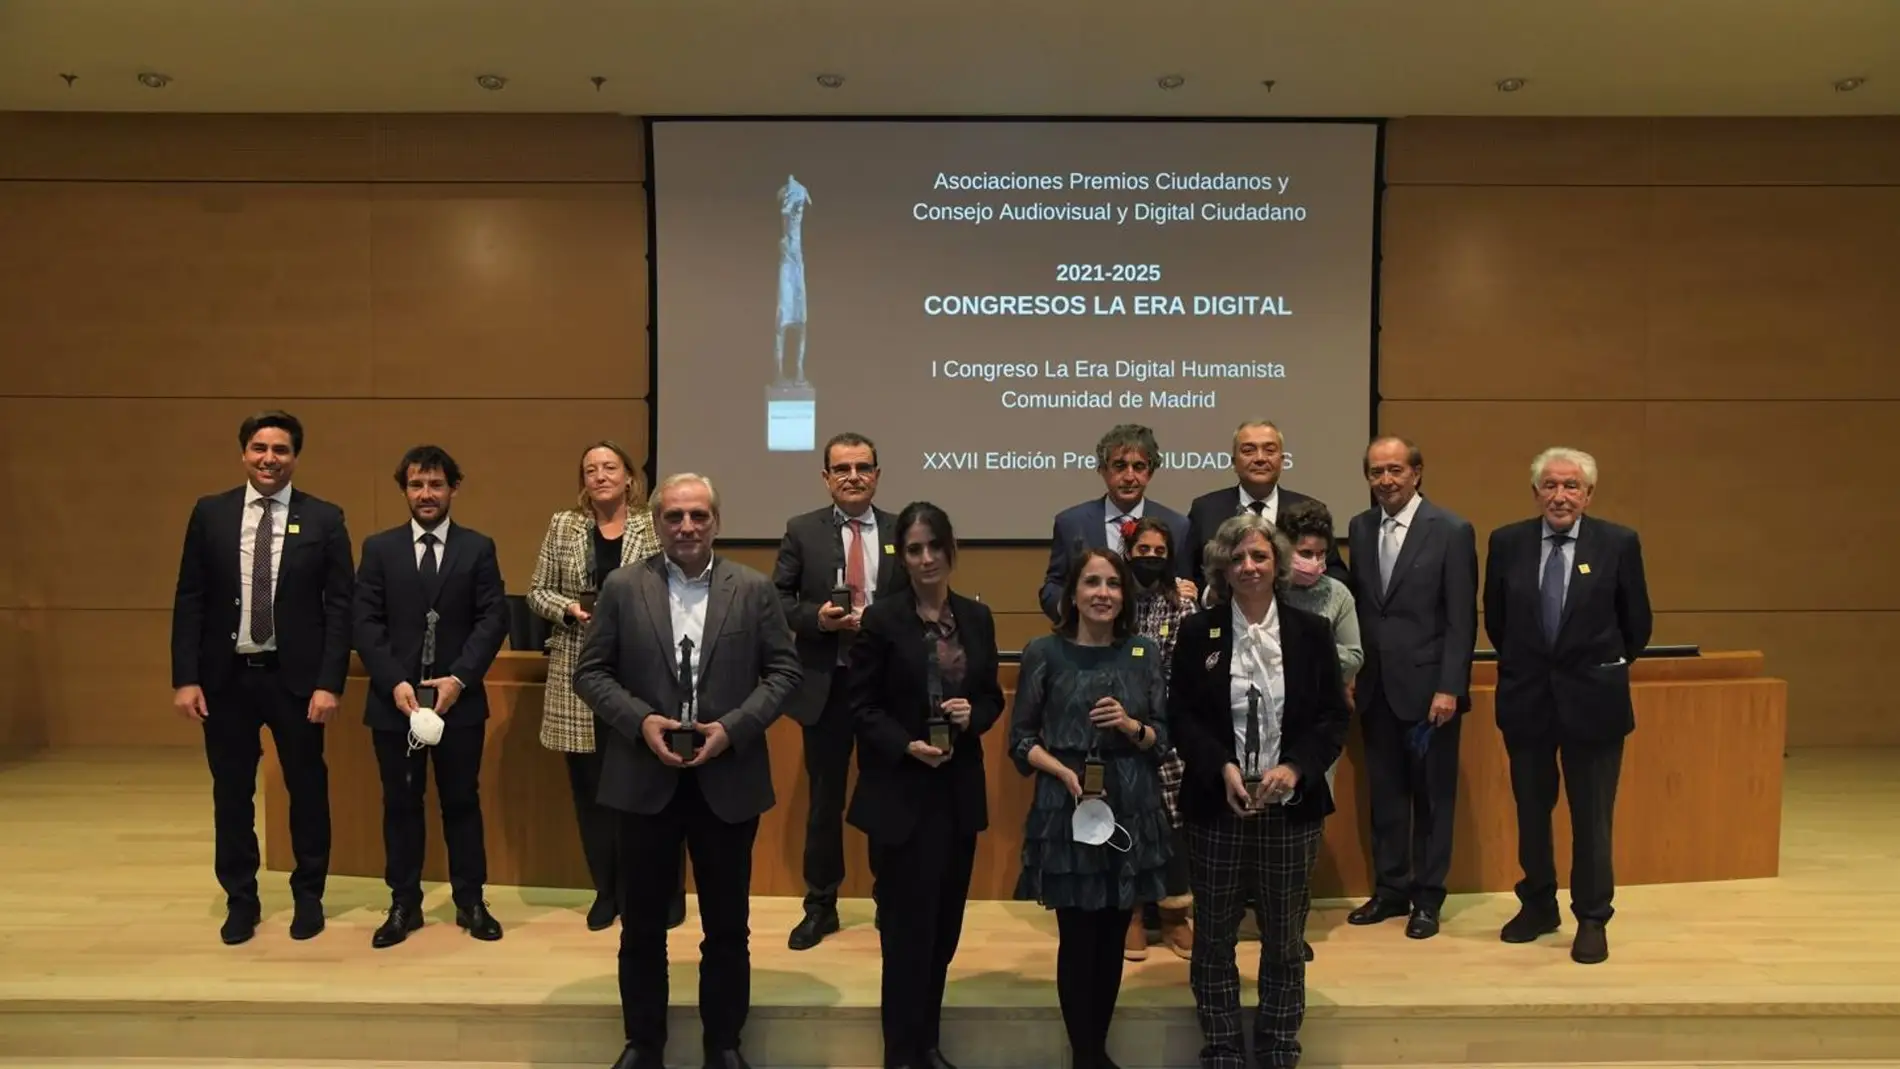 La Diputación de Badajoz, premiada en los XXVII Premios Ciudadanos 2021 por su apuesta por la transformación digital